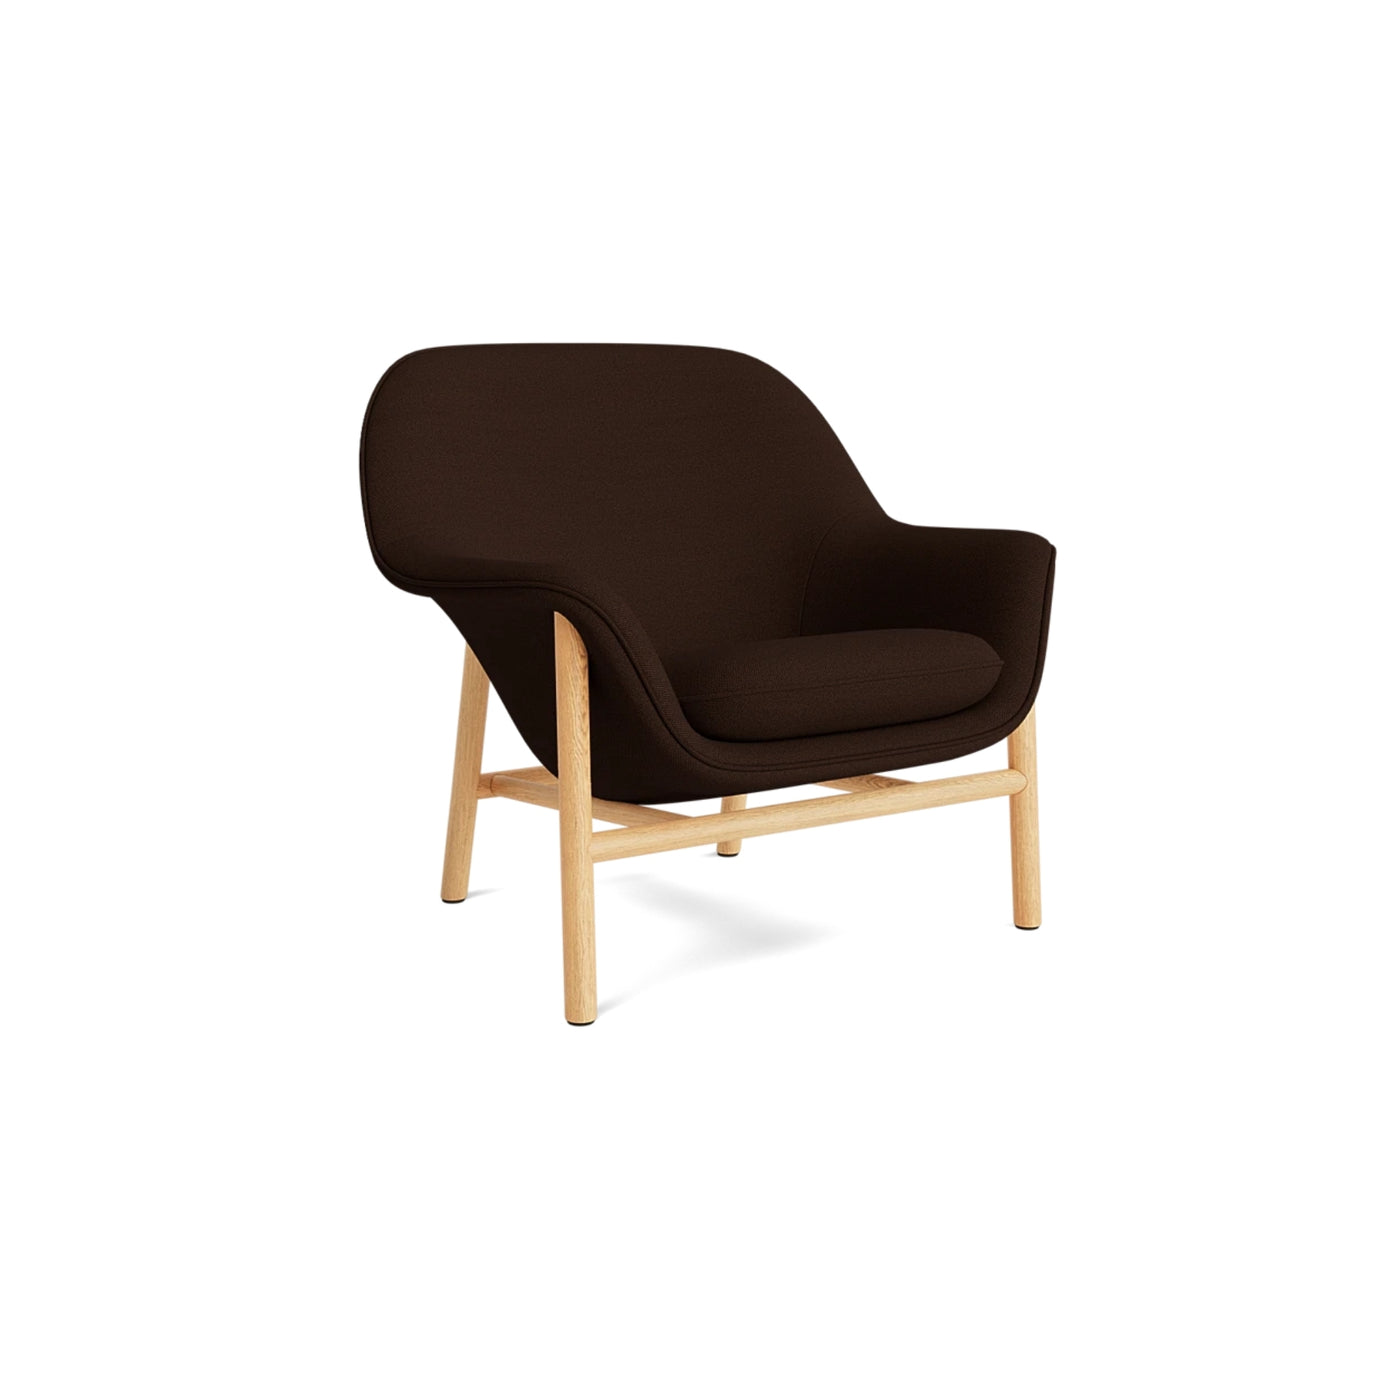 Normann Copenhagen Drape Lounge Chair at someday designs. #colour_hallingdal-370